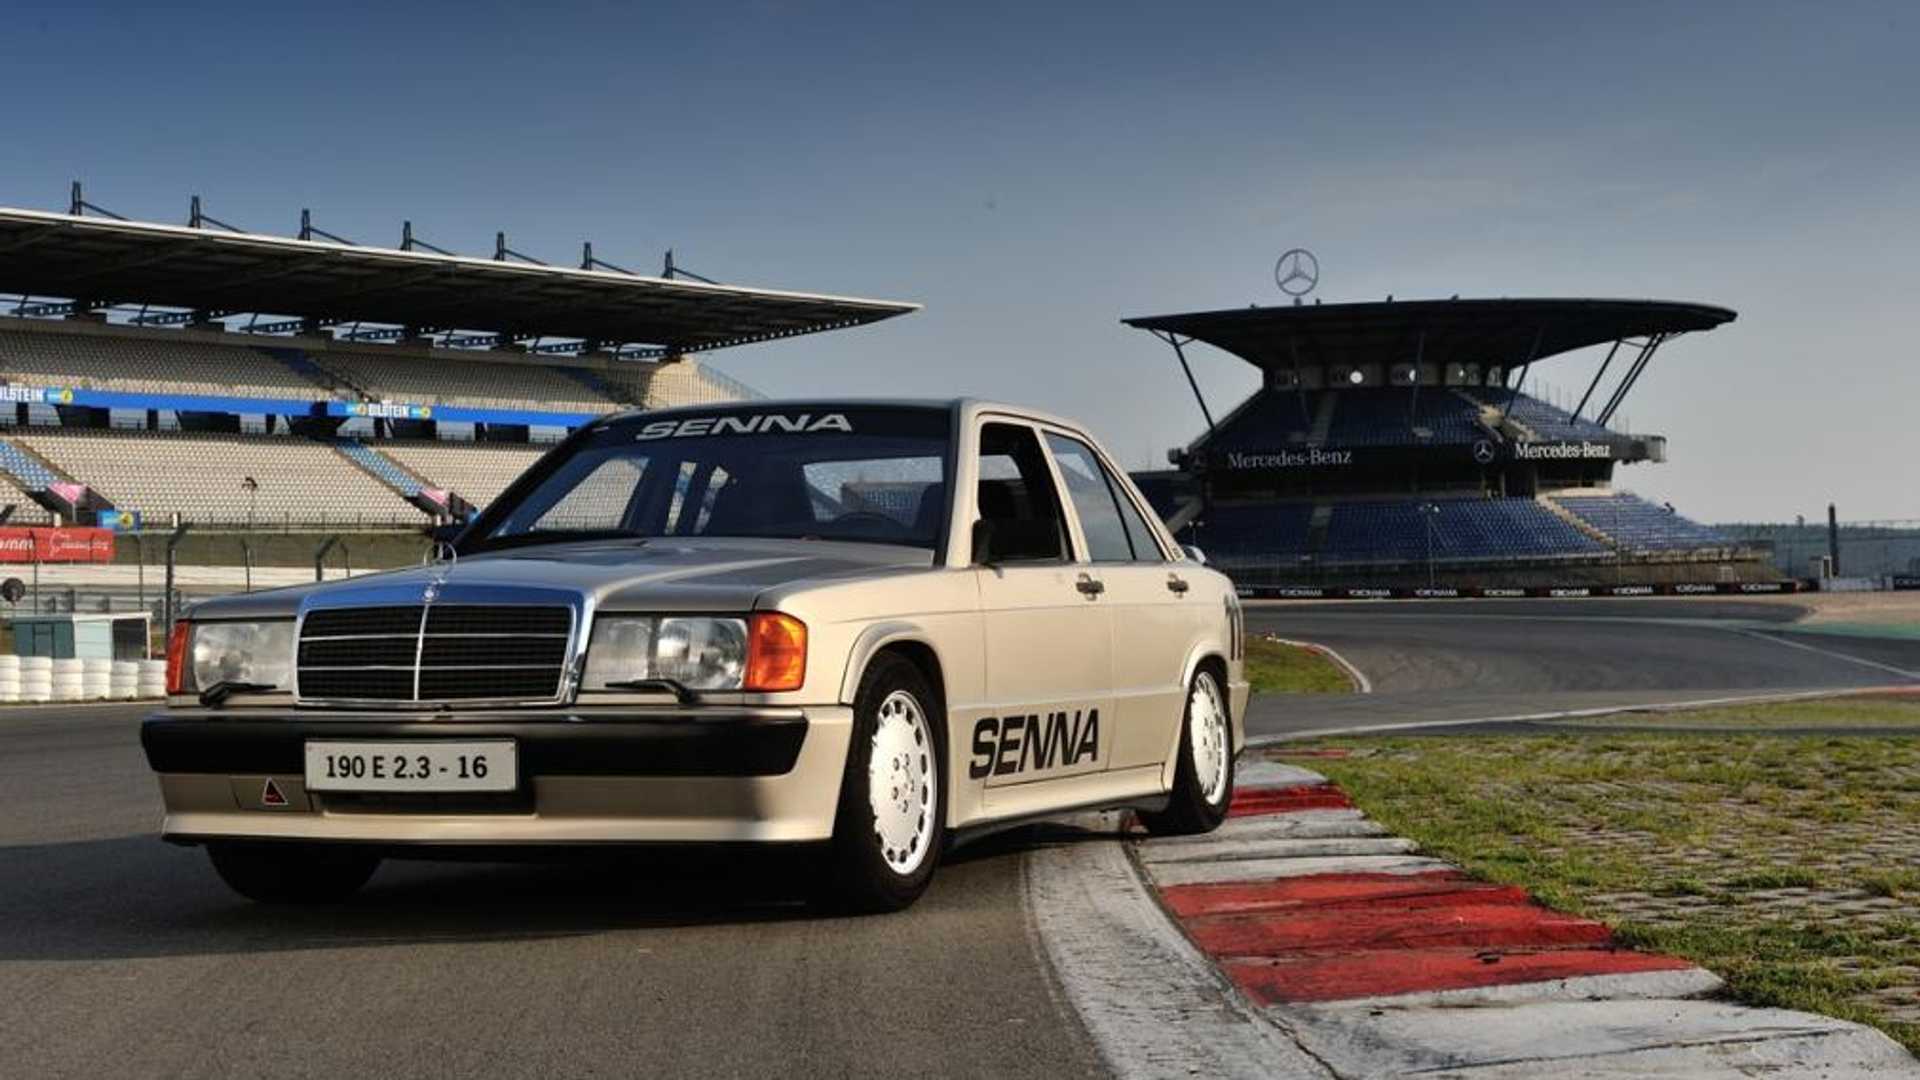 El Mercedes-Benz 190E que fue de Ayrton Senna y sigue circulando